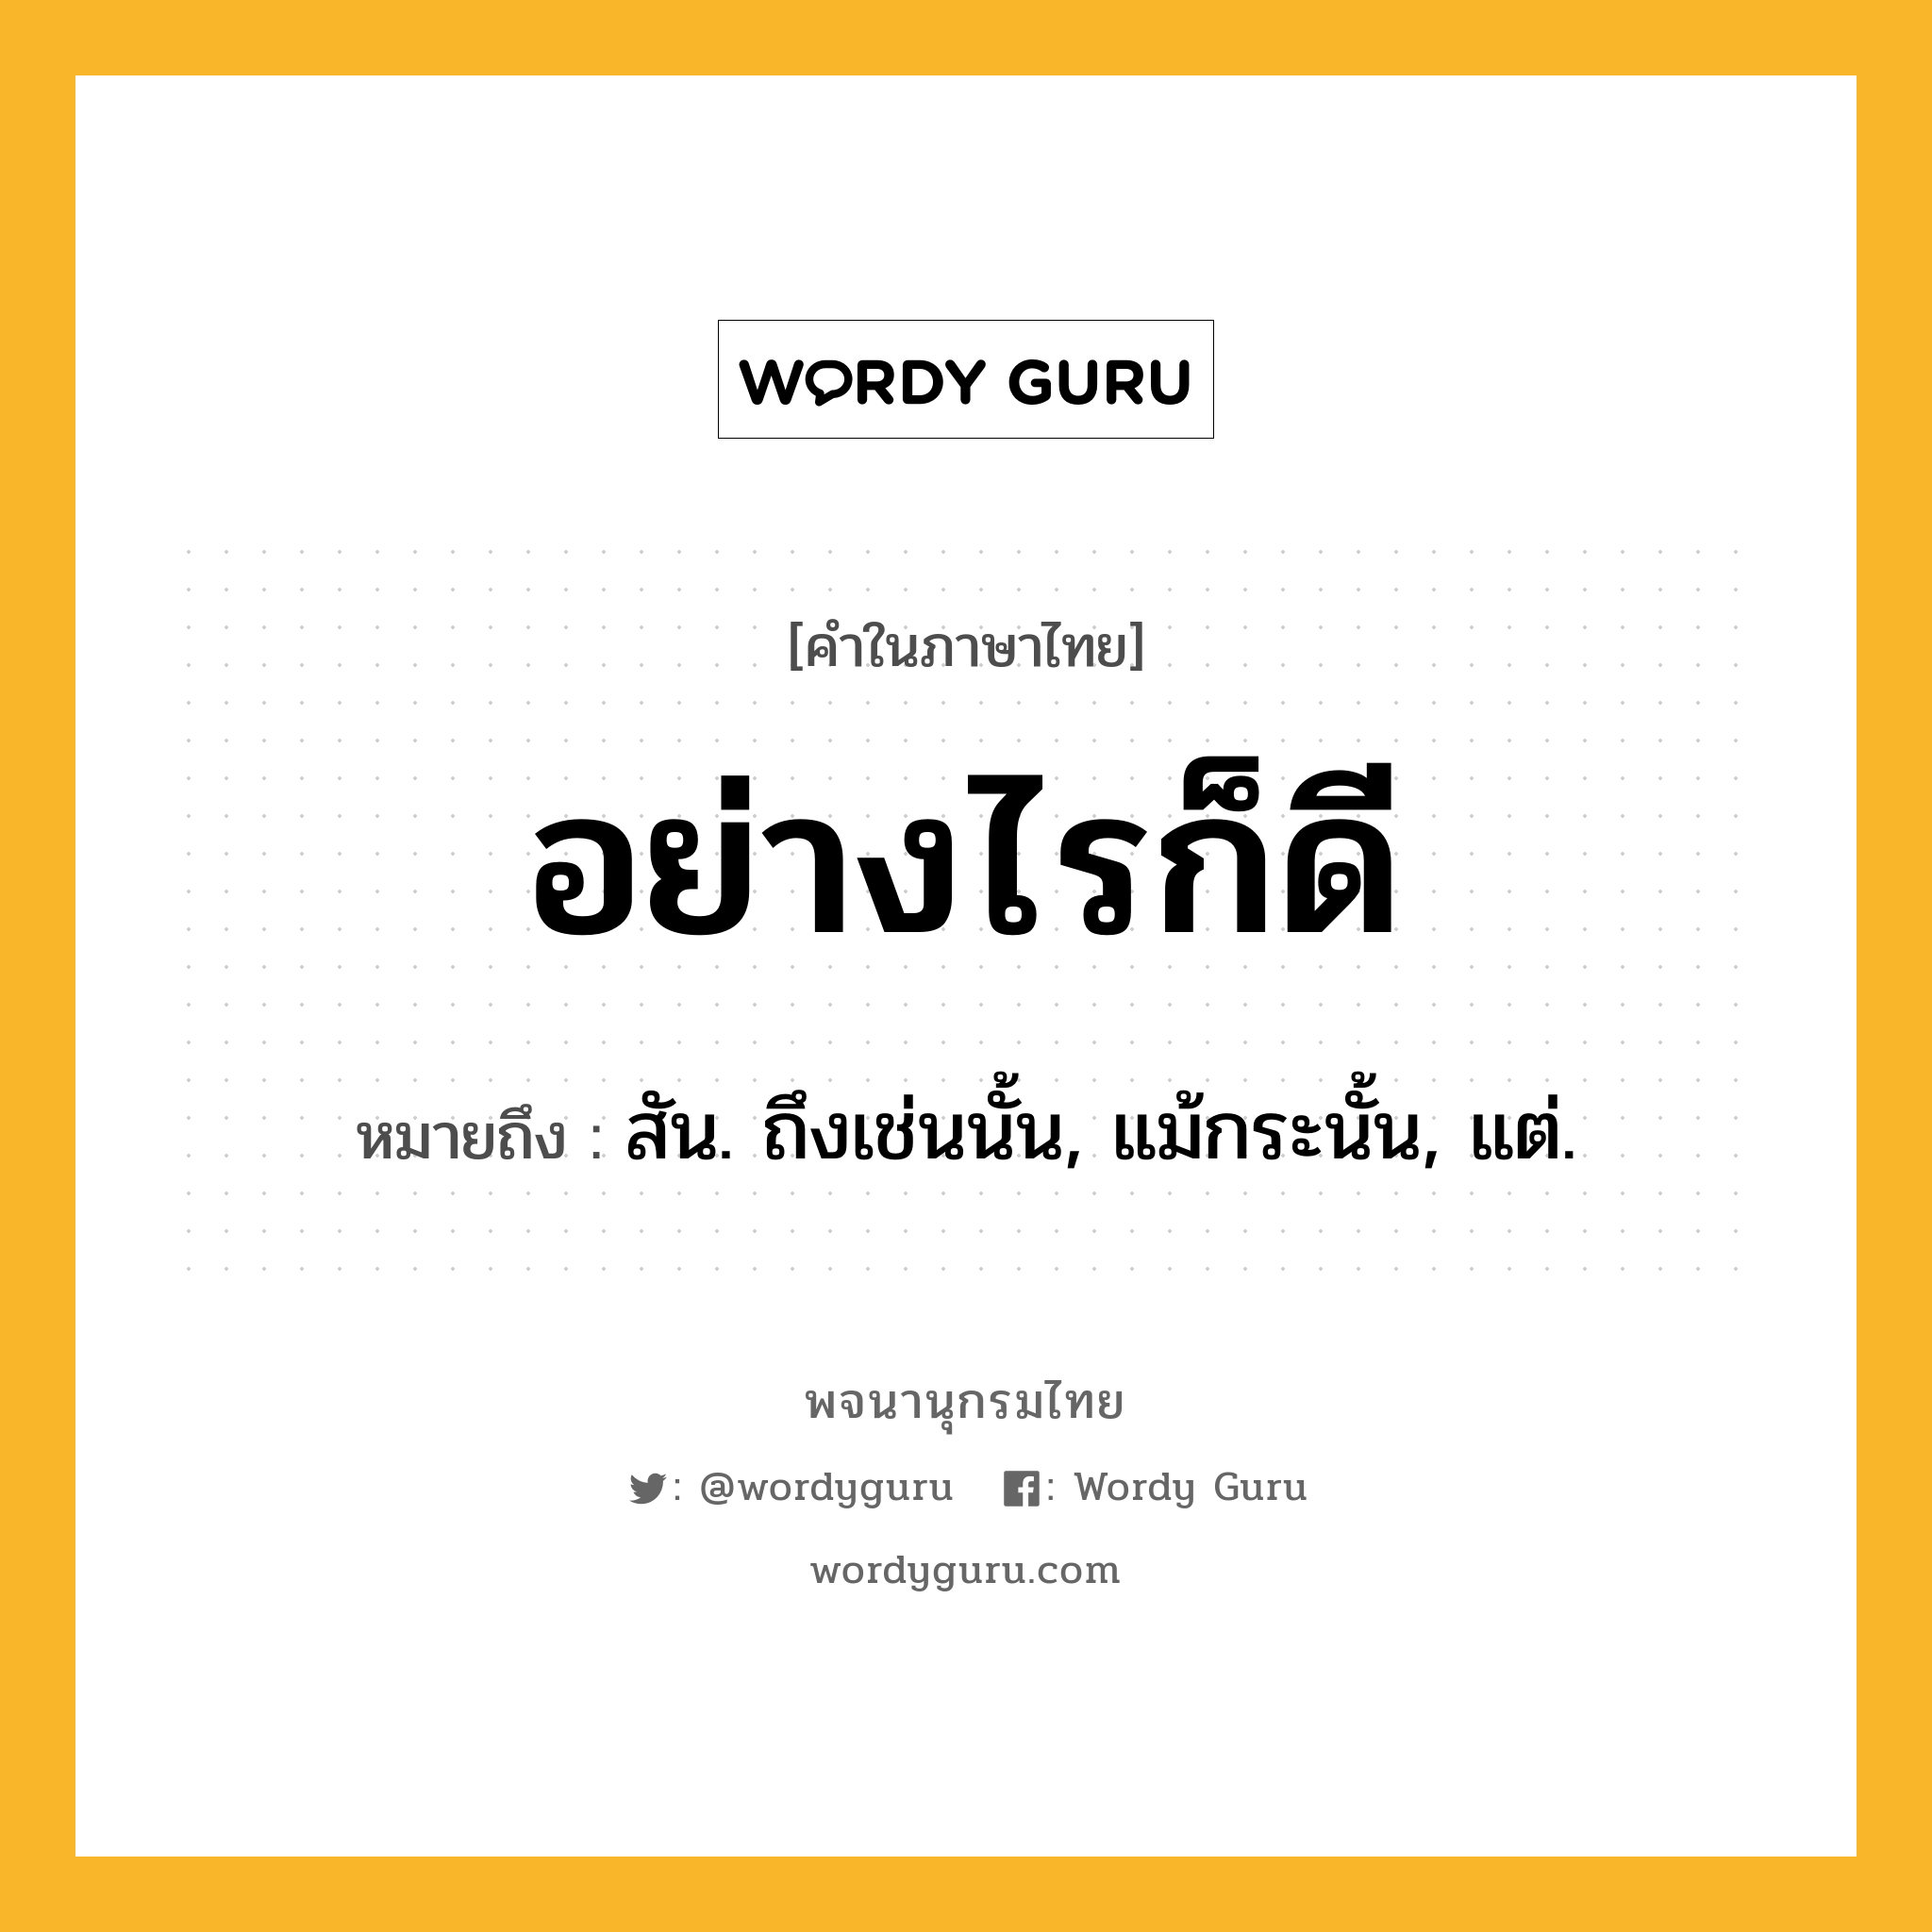 อย่างไรก็ดี หมายถึงอะไร?, คำในภาษาไทย อย่างไรก็ดี หมายถึง สัน. ถึงเช่นนั้น, แม้กระนั้น, แต่.